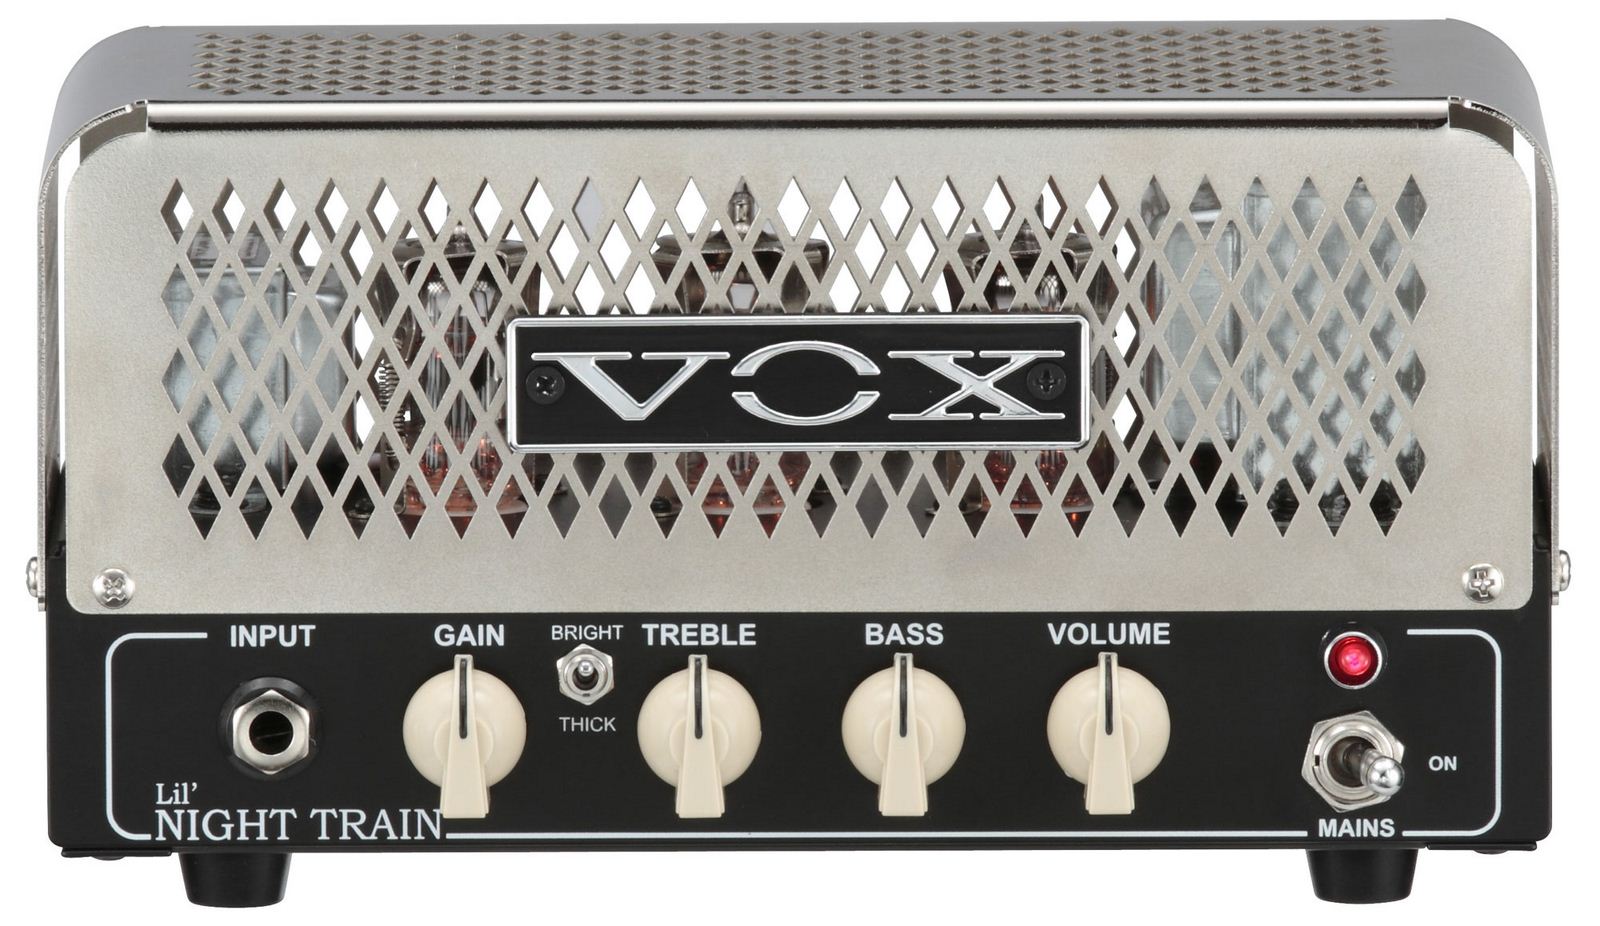 Foto Vox Nt2H Night Train Head Amplificador Guitarra